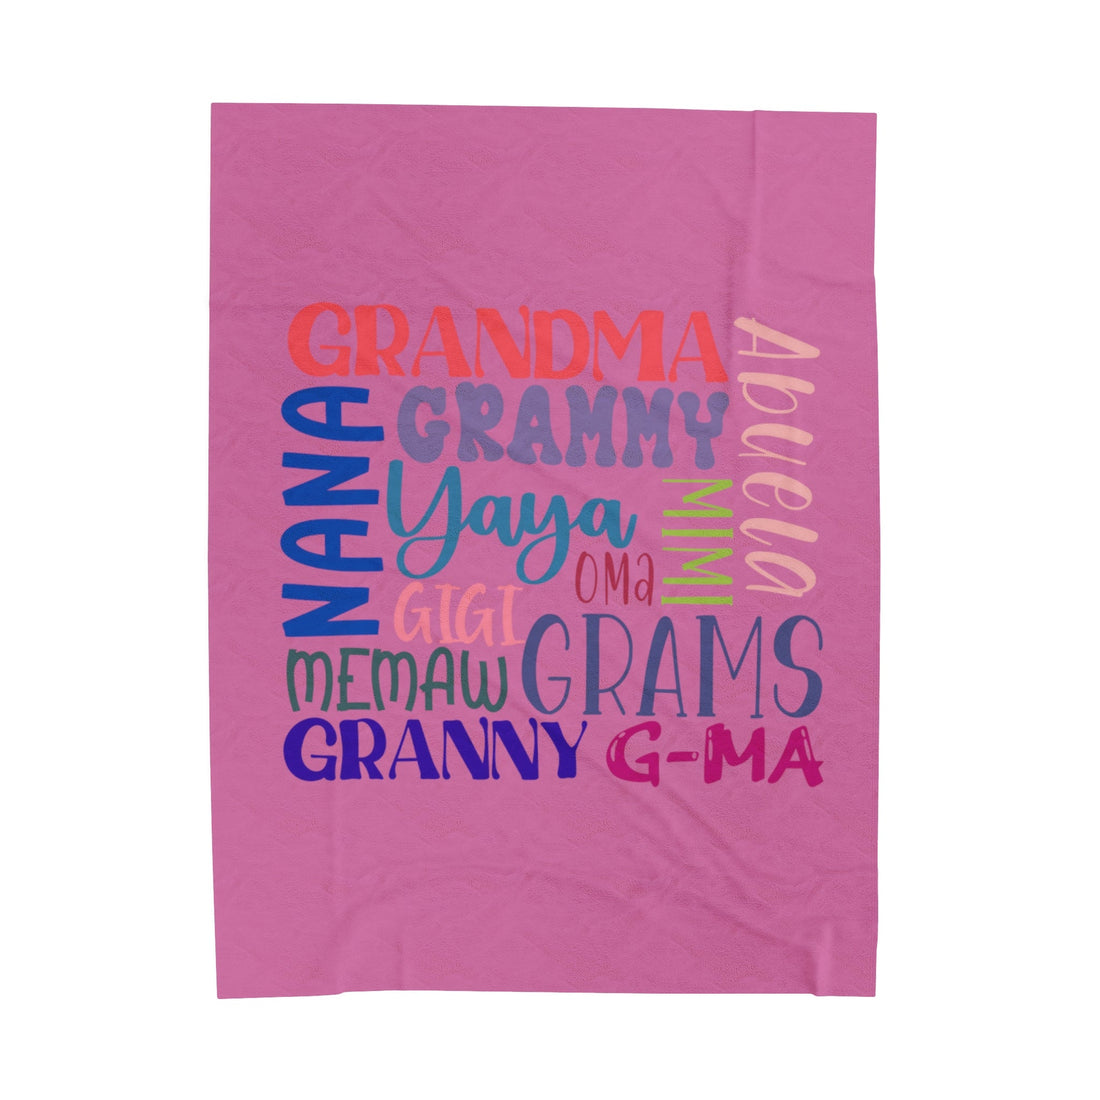 Grandma Names Velveteen Plush Blanket - All Over Prints - Positively Sassy - Grandma Names Velveteen Plush Blanket